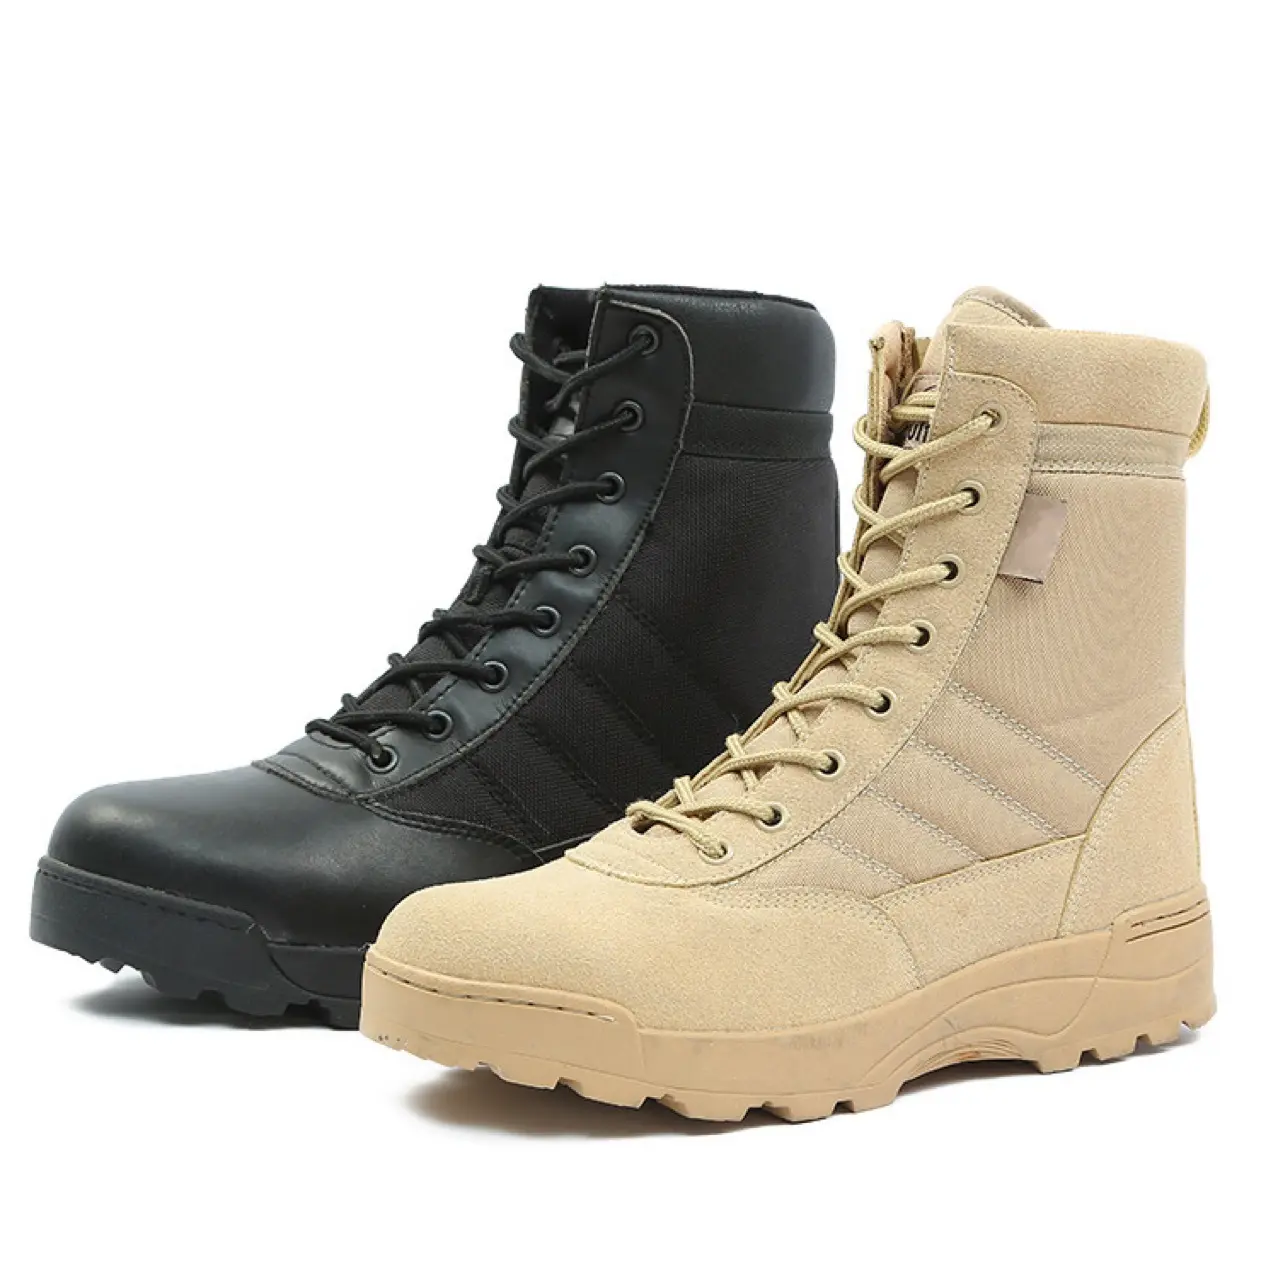 Zapatos de seguridad para el trabajo, calzado Industrial de alta gama de cuero genuino CE S1P S3